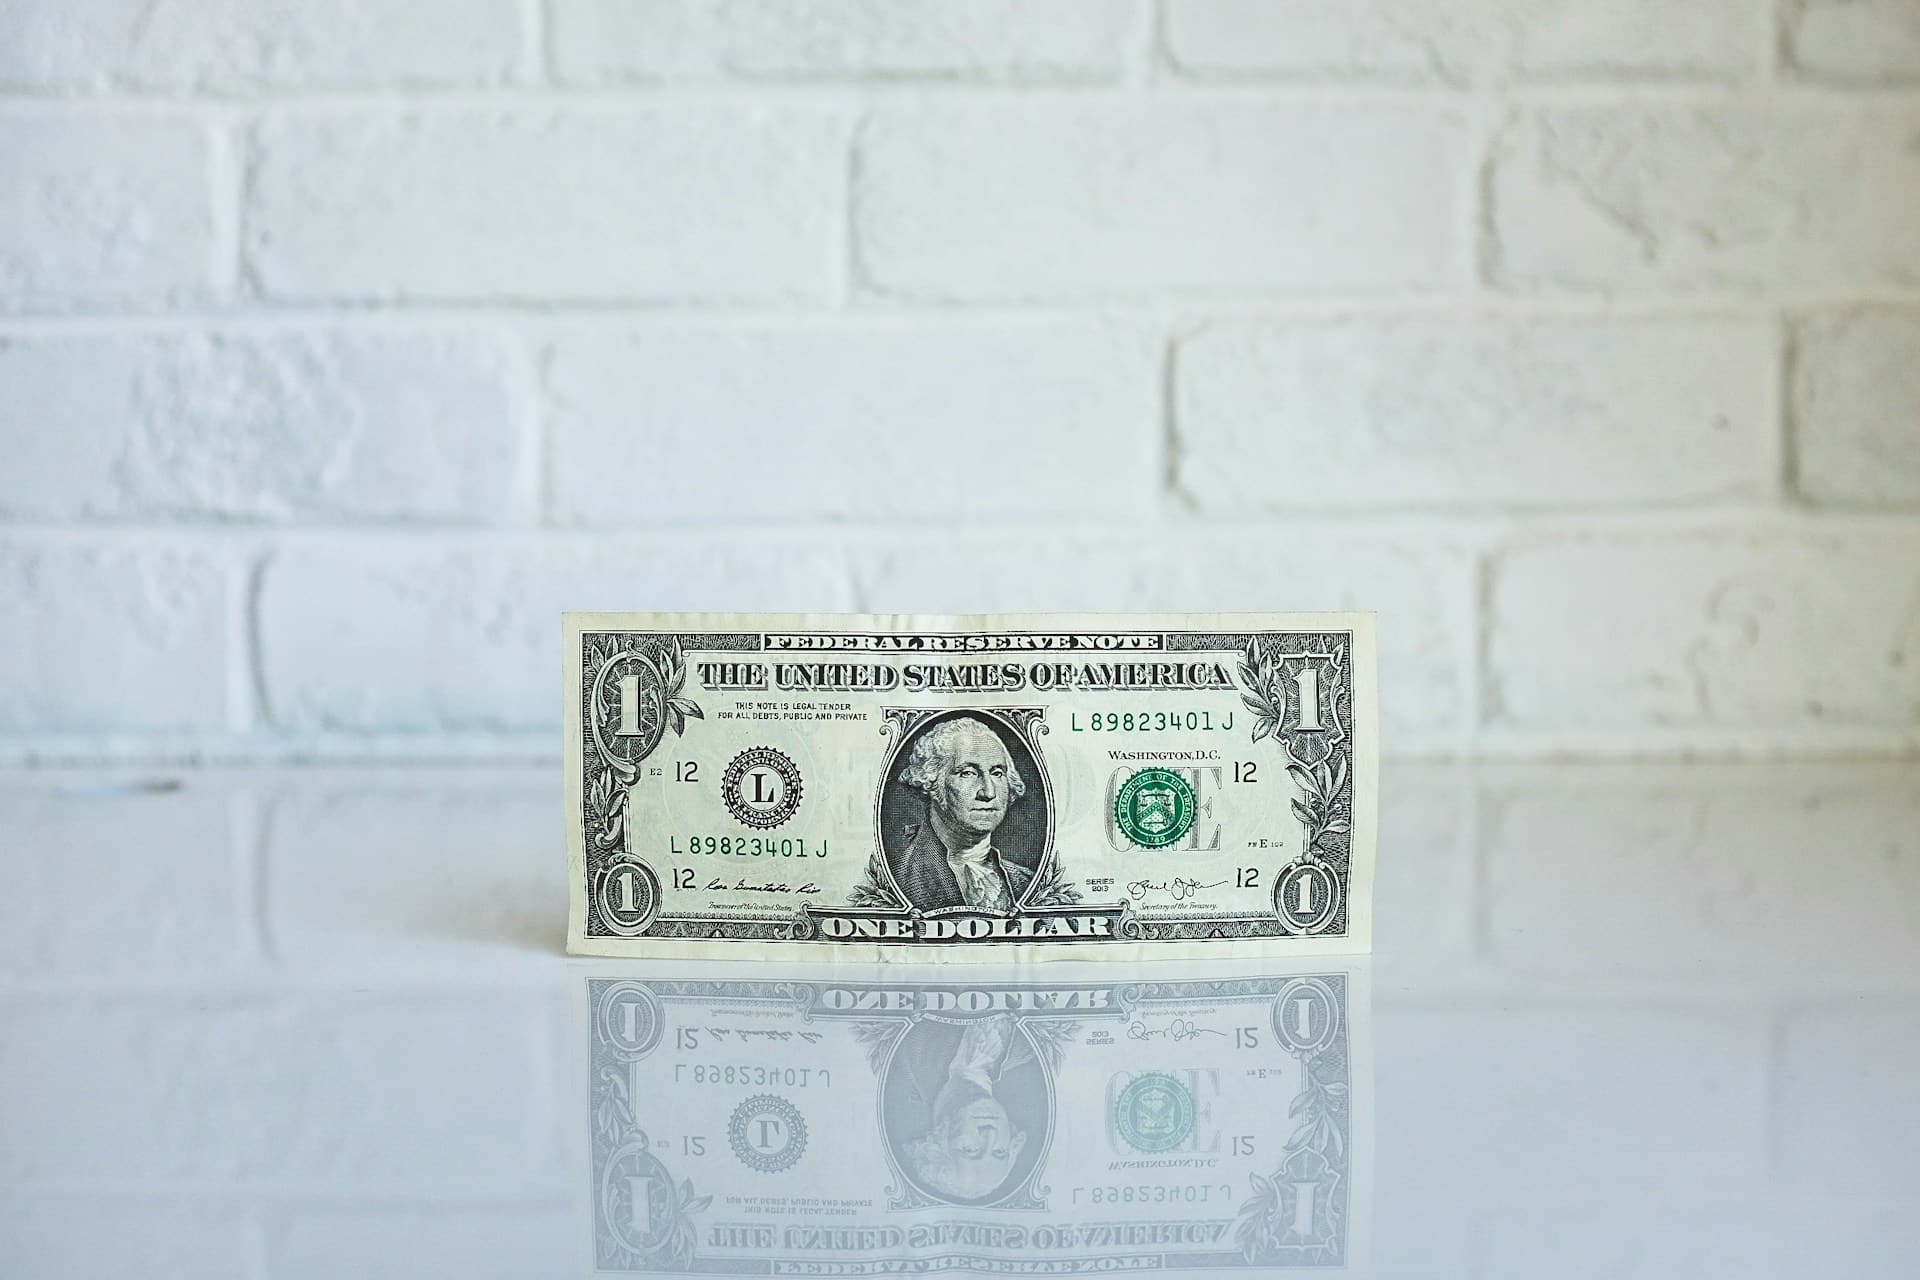 Ein einzelner Dollarschein mit dem Gesicht von George Washington darauf, vor einem weißen Backsteinmauerhintergrund